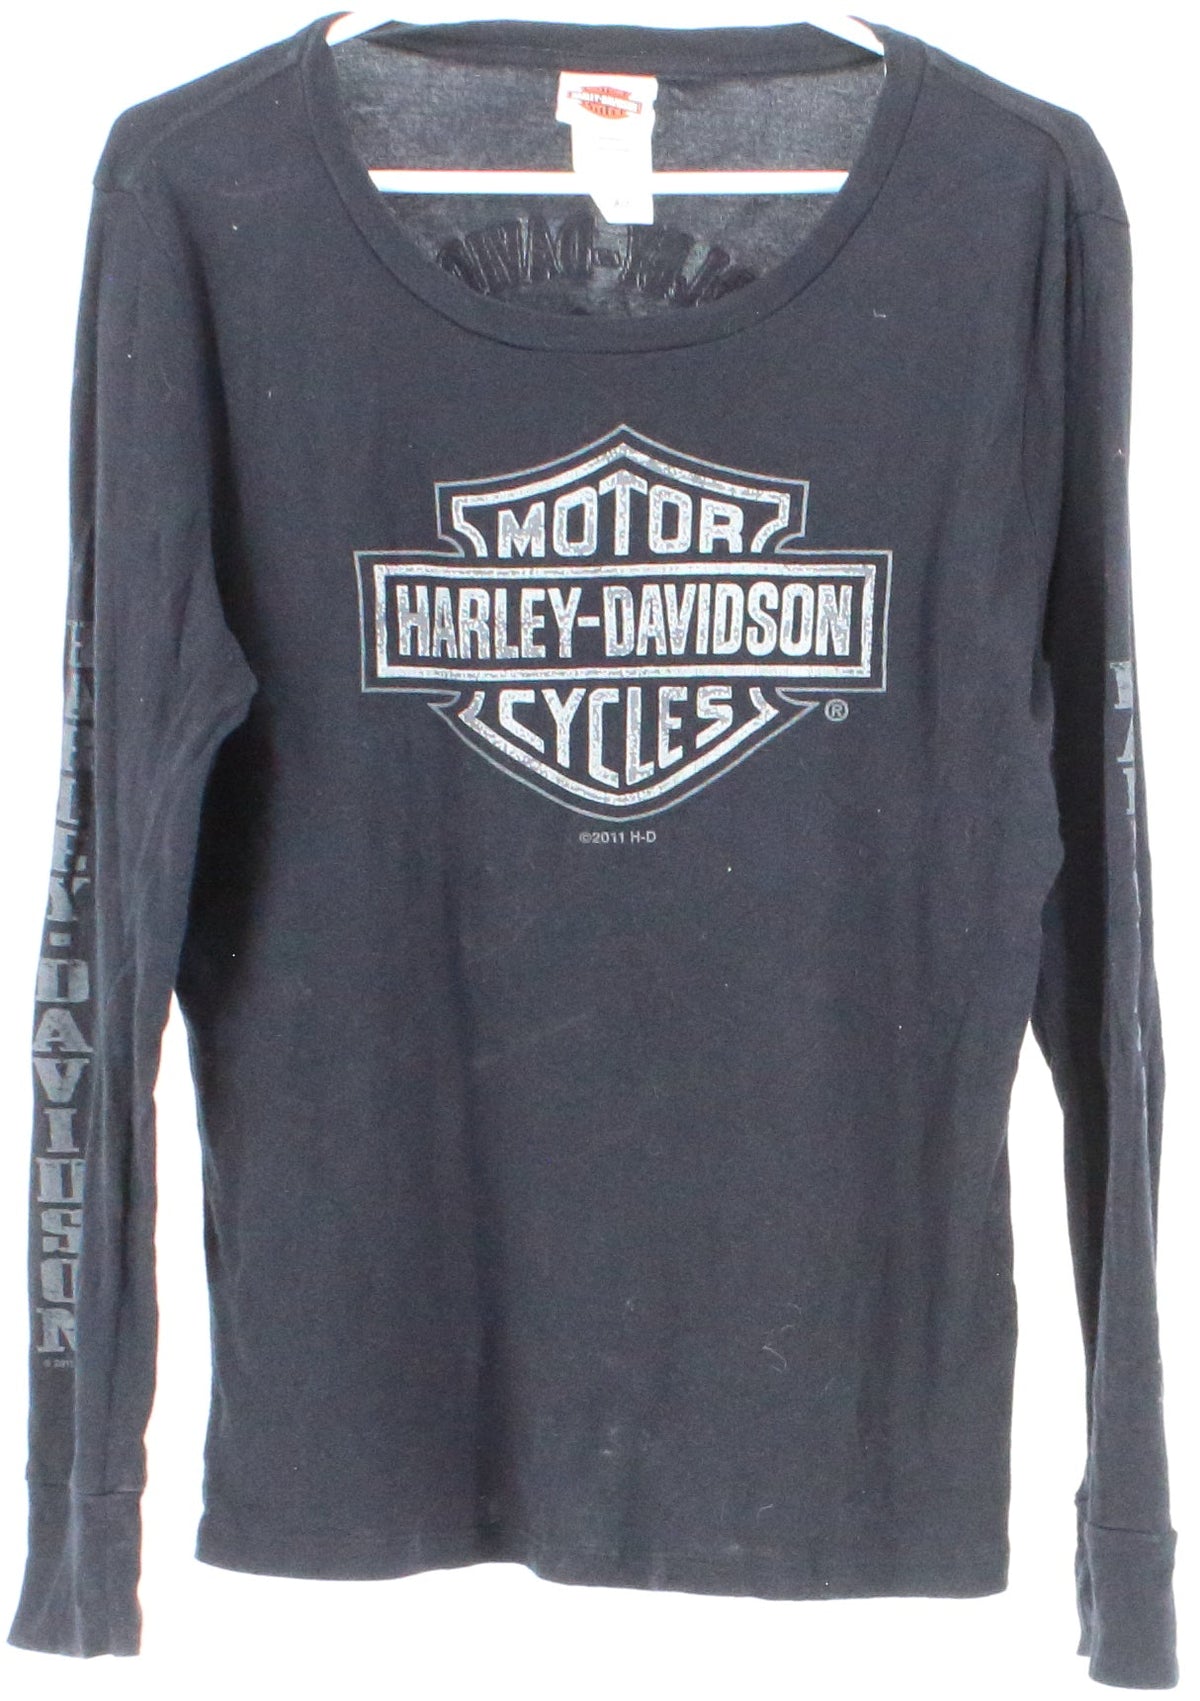 Harley Davidson Motorcycles Long Sleeve T-Shirt